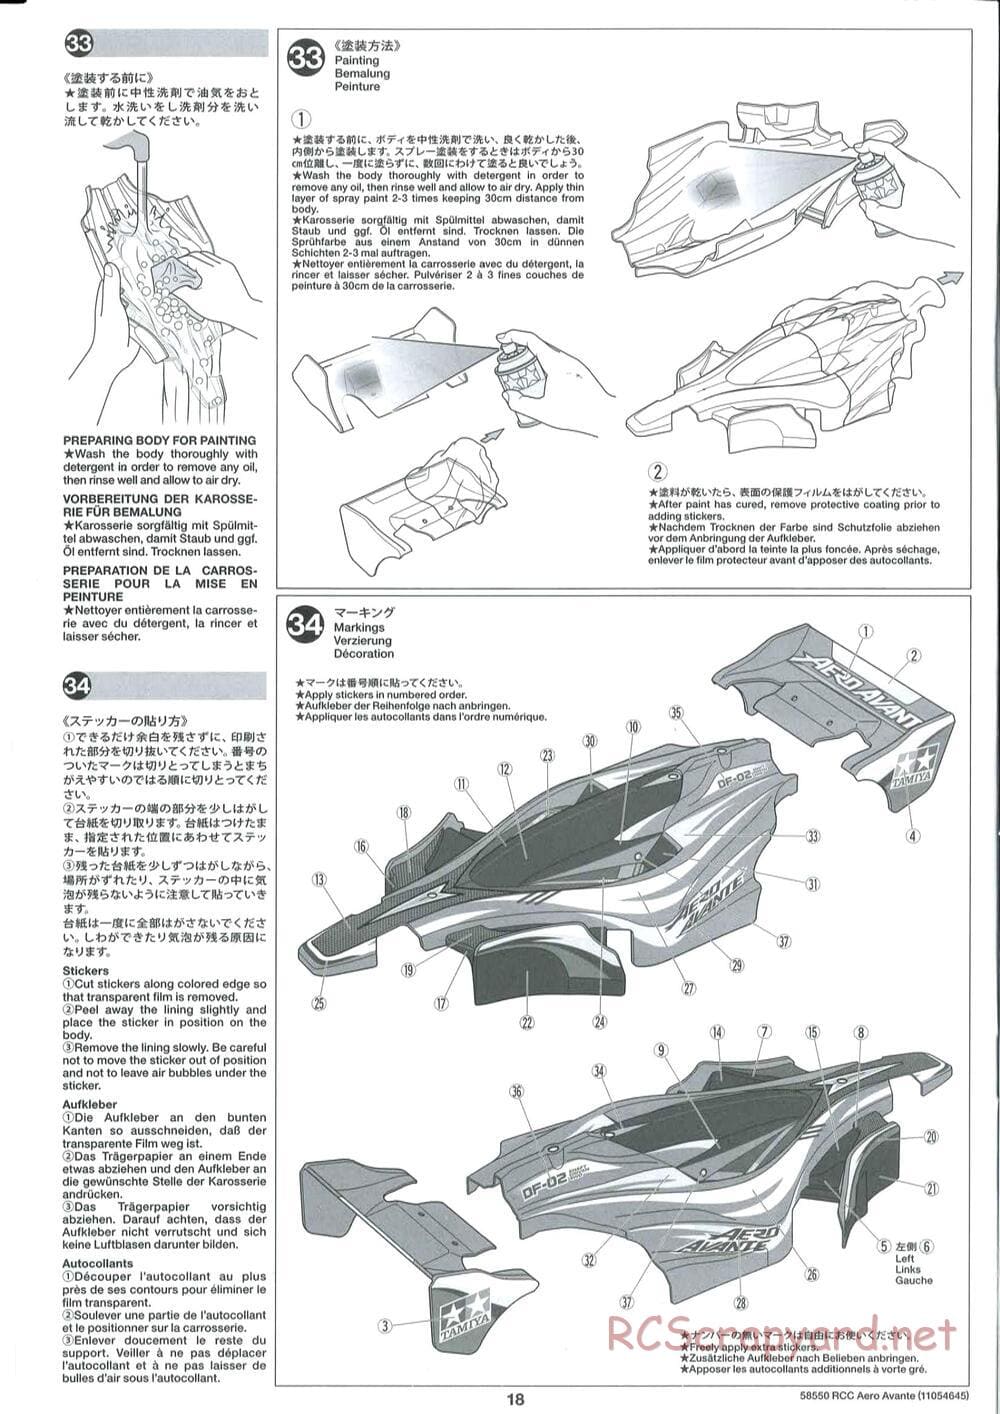 Tamiya - Aero Avante Chassis - Manual - Page 18